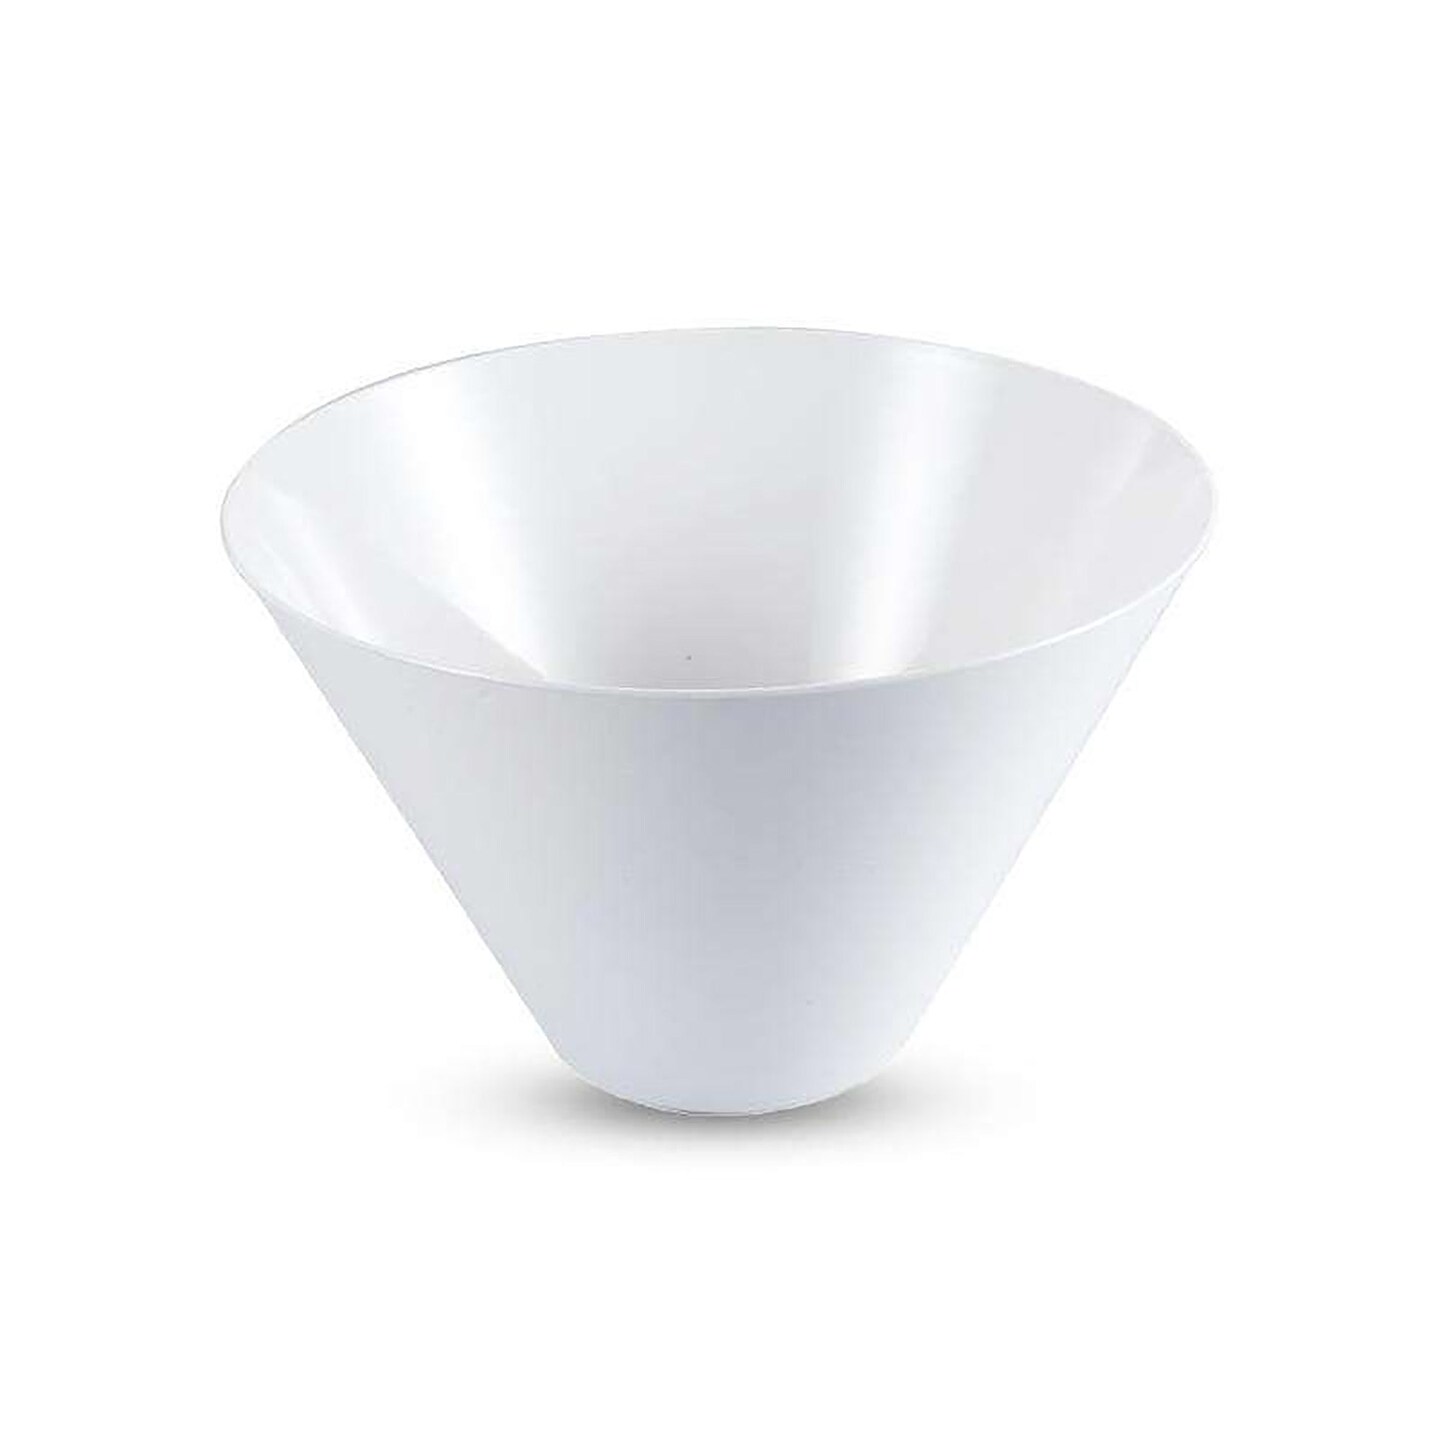 White Round Deep Plastic Serving Bowls - 96 Ounces (24 Bowls)